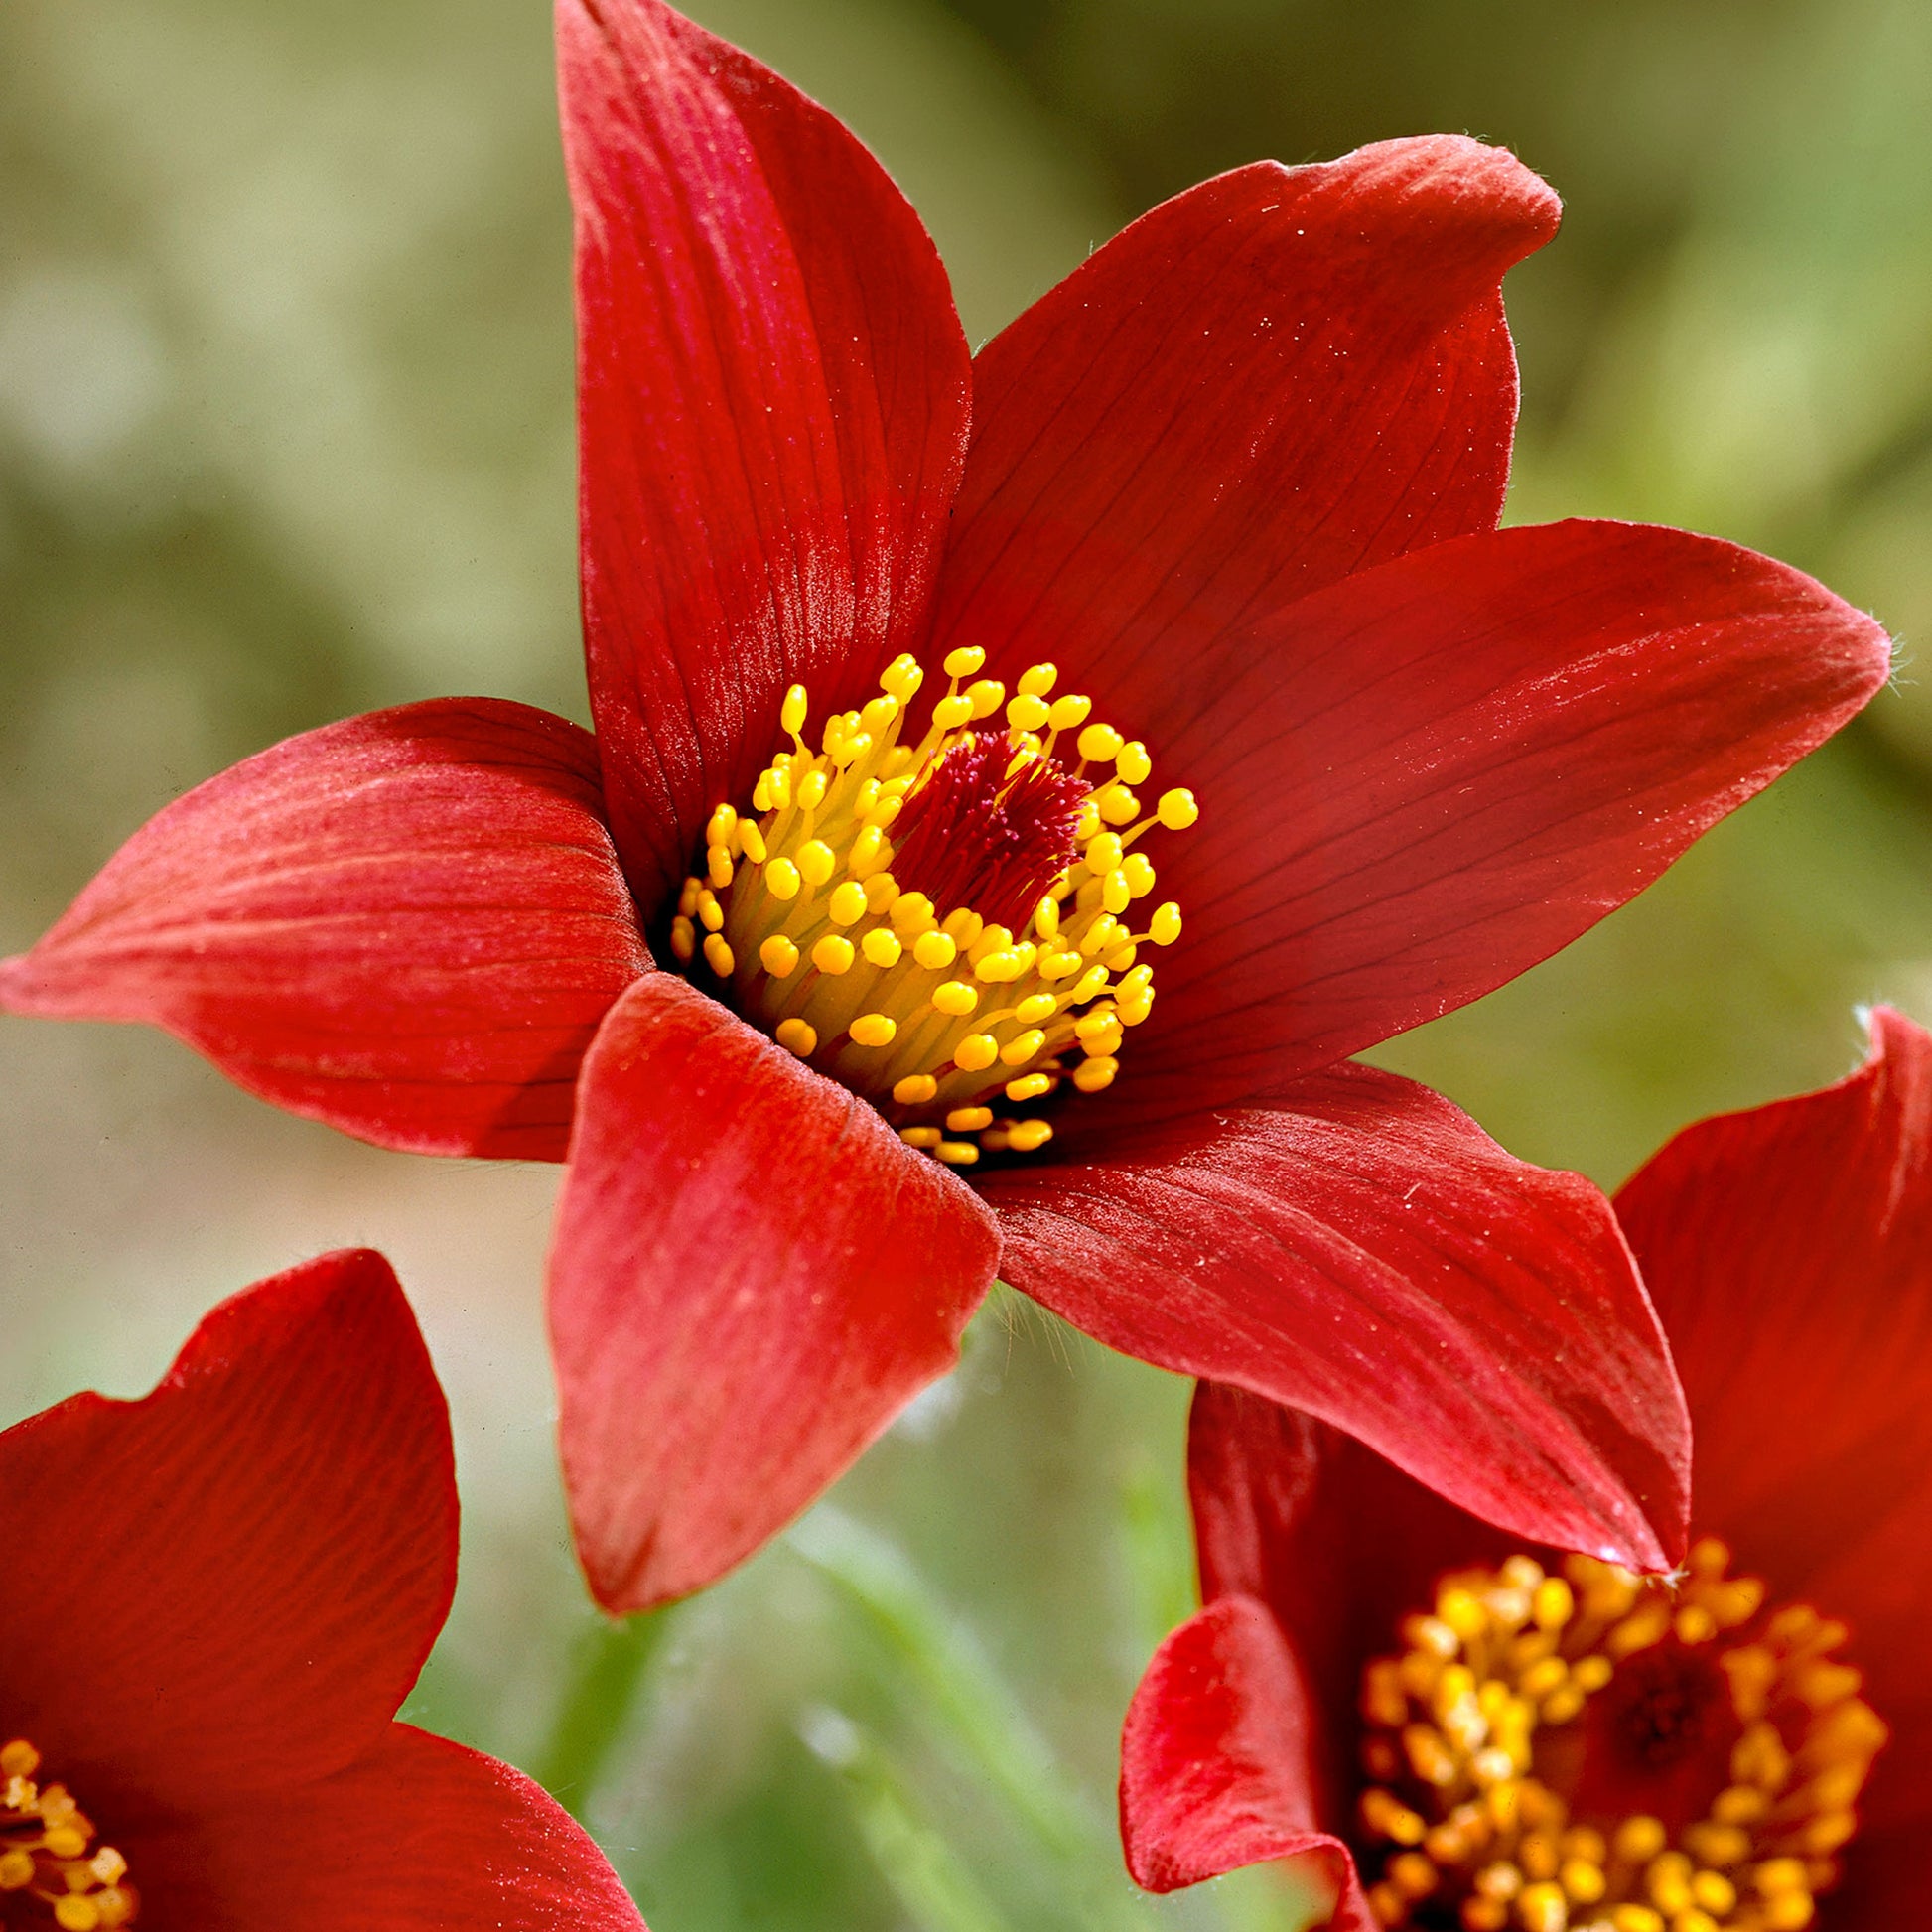 Achetez maintenant une plante vivace 3x Anémone pulsatille rouge-jaune -  Plants à racines nues | Bakker.com